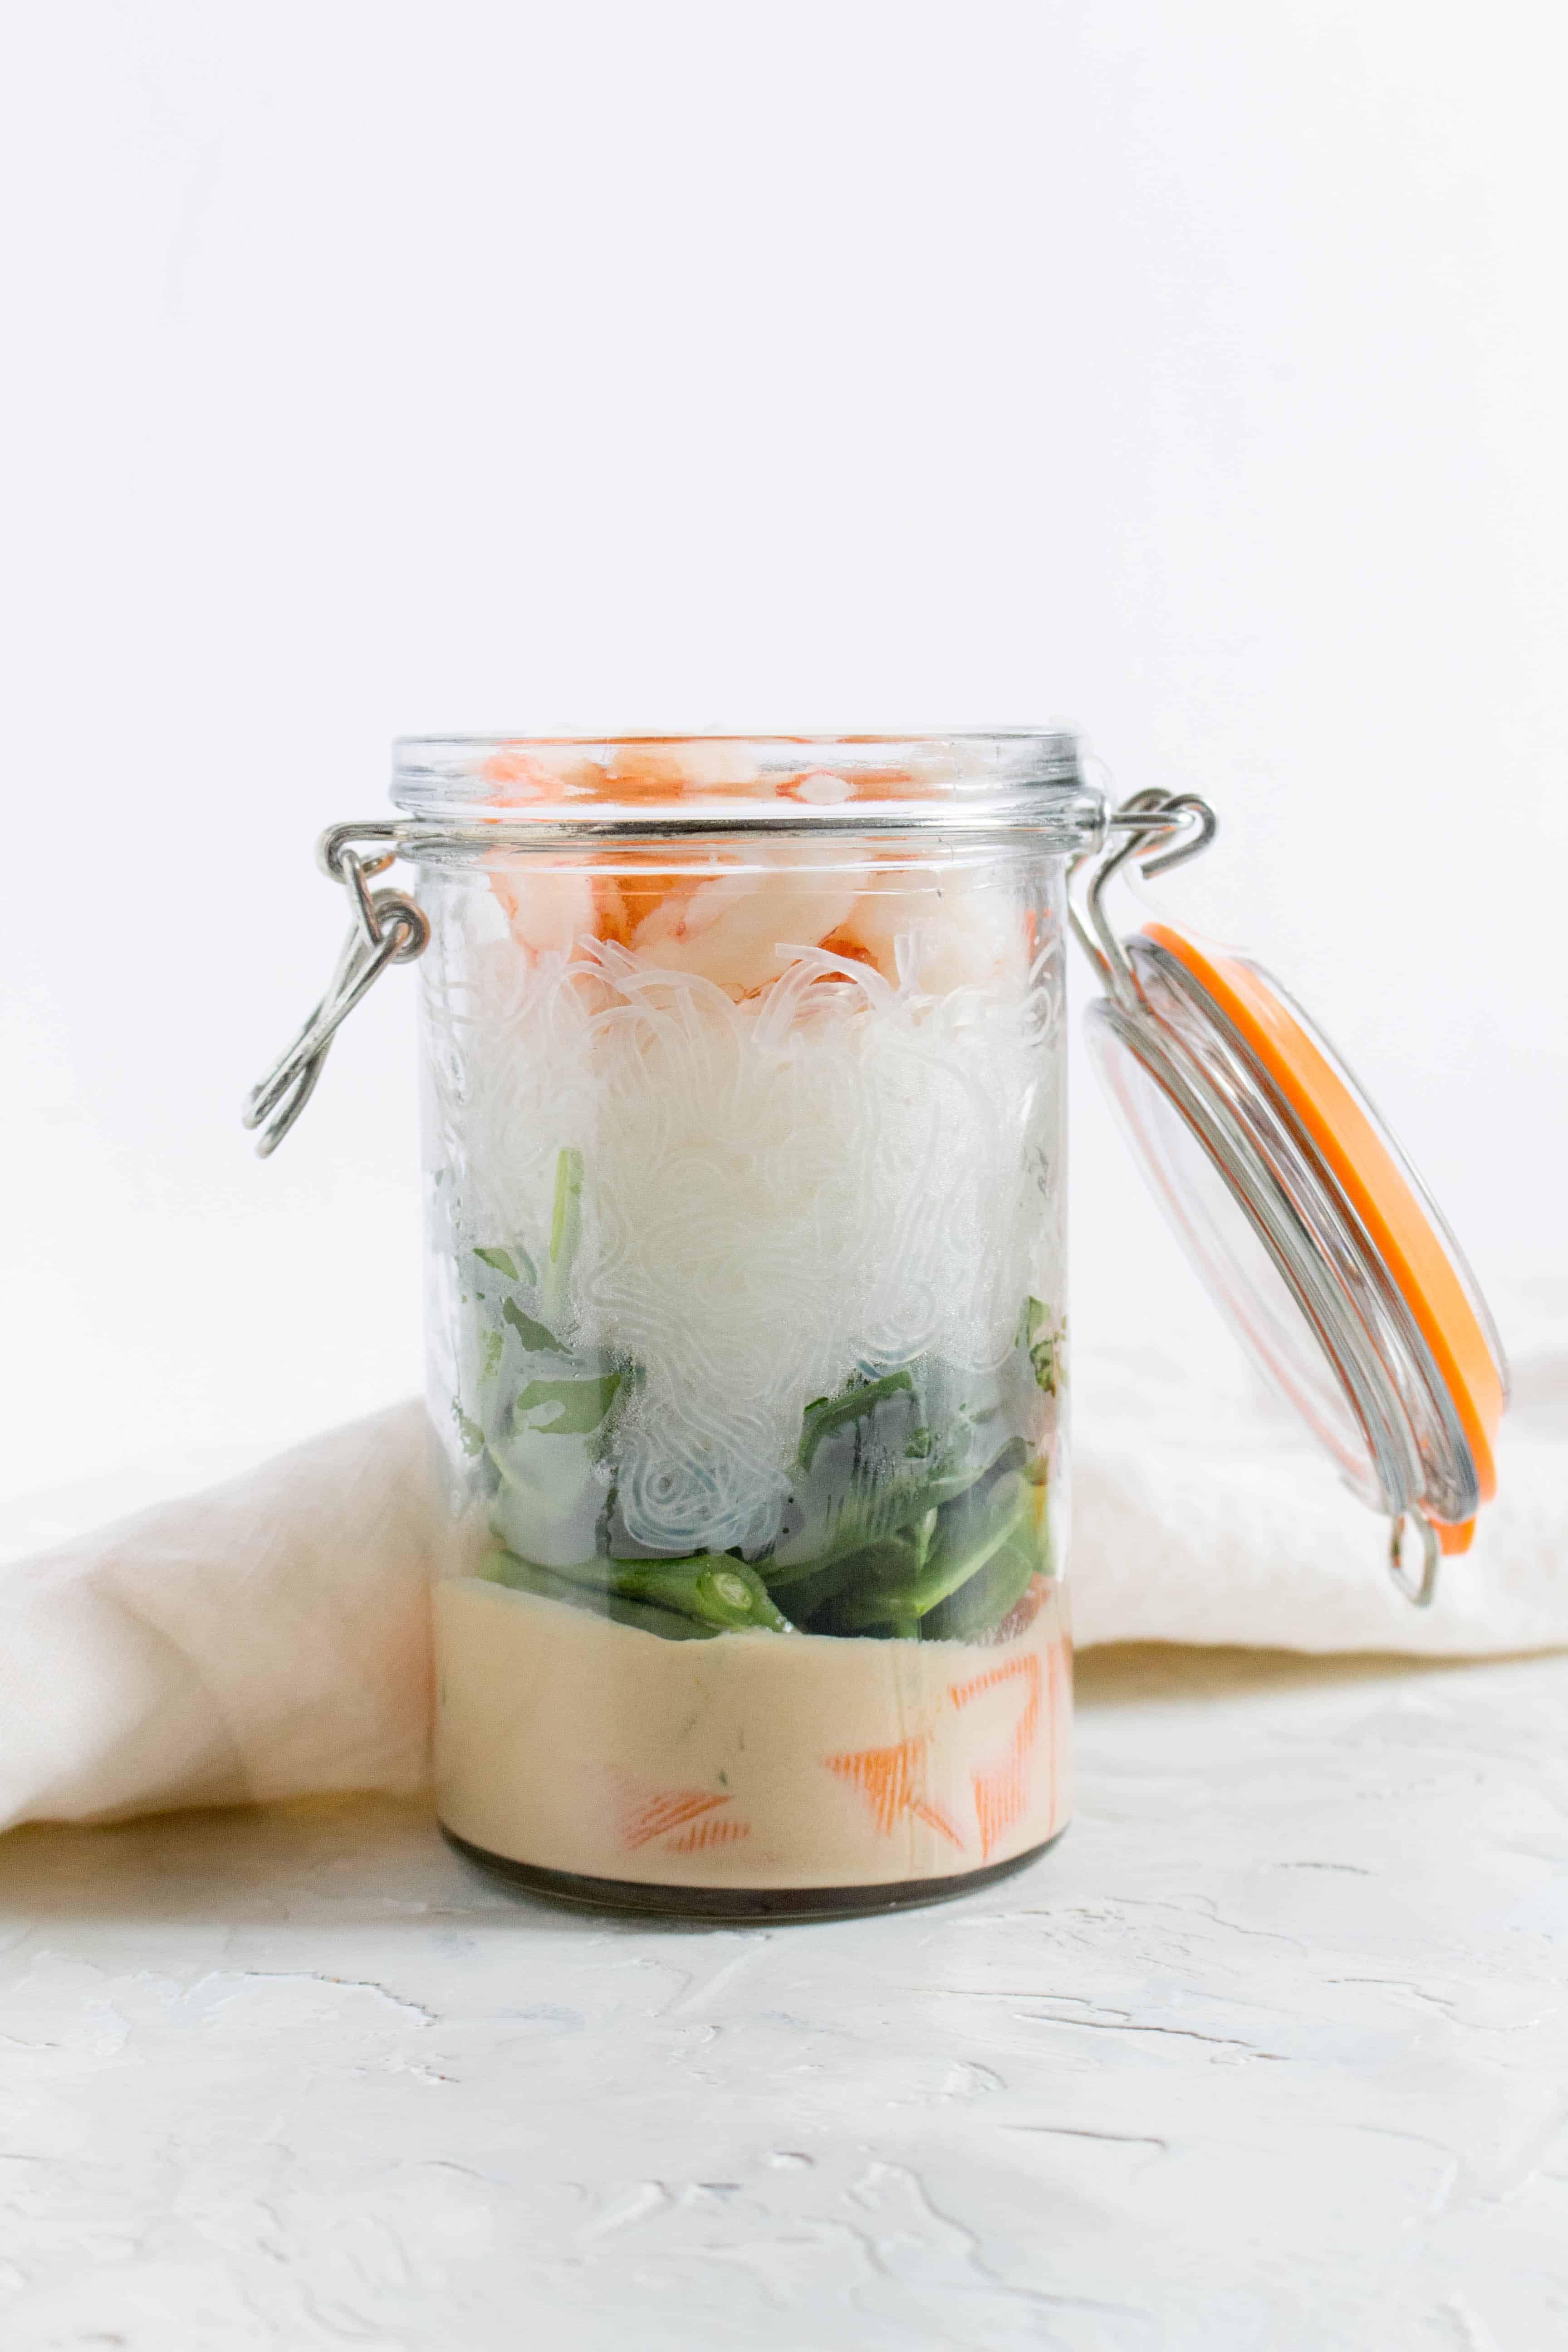 Thai Shrimp Noodles in a Jar | meal prep for work